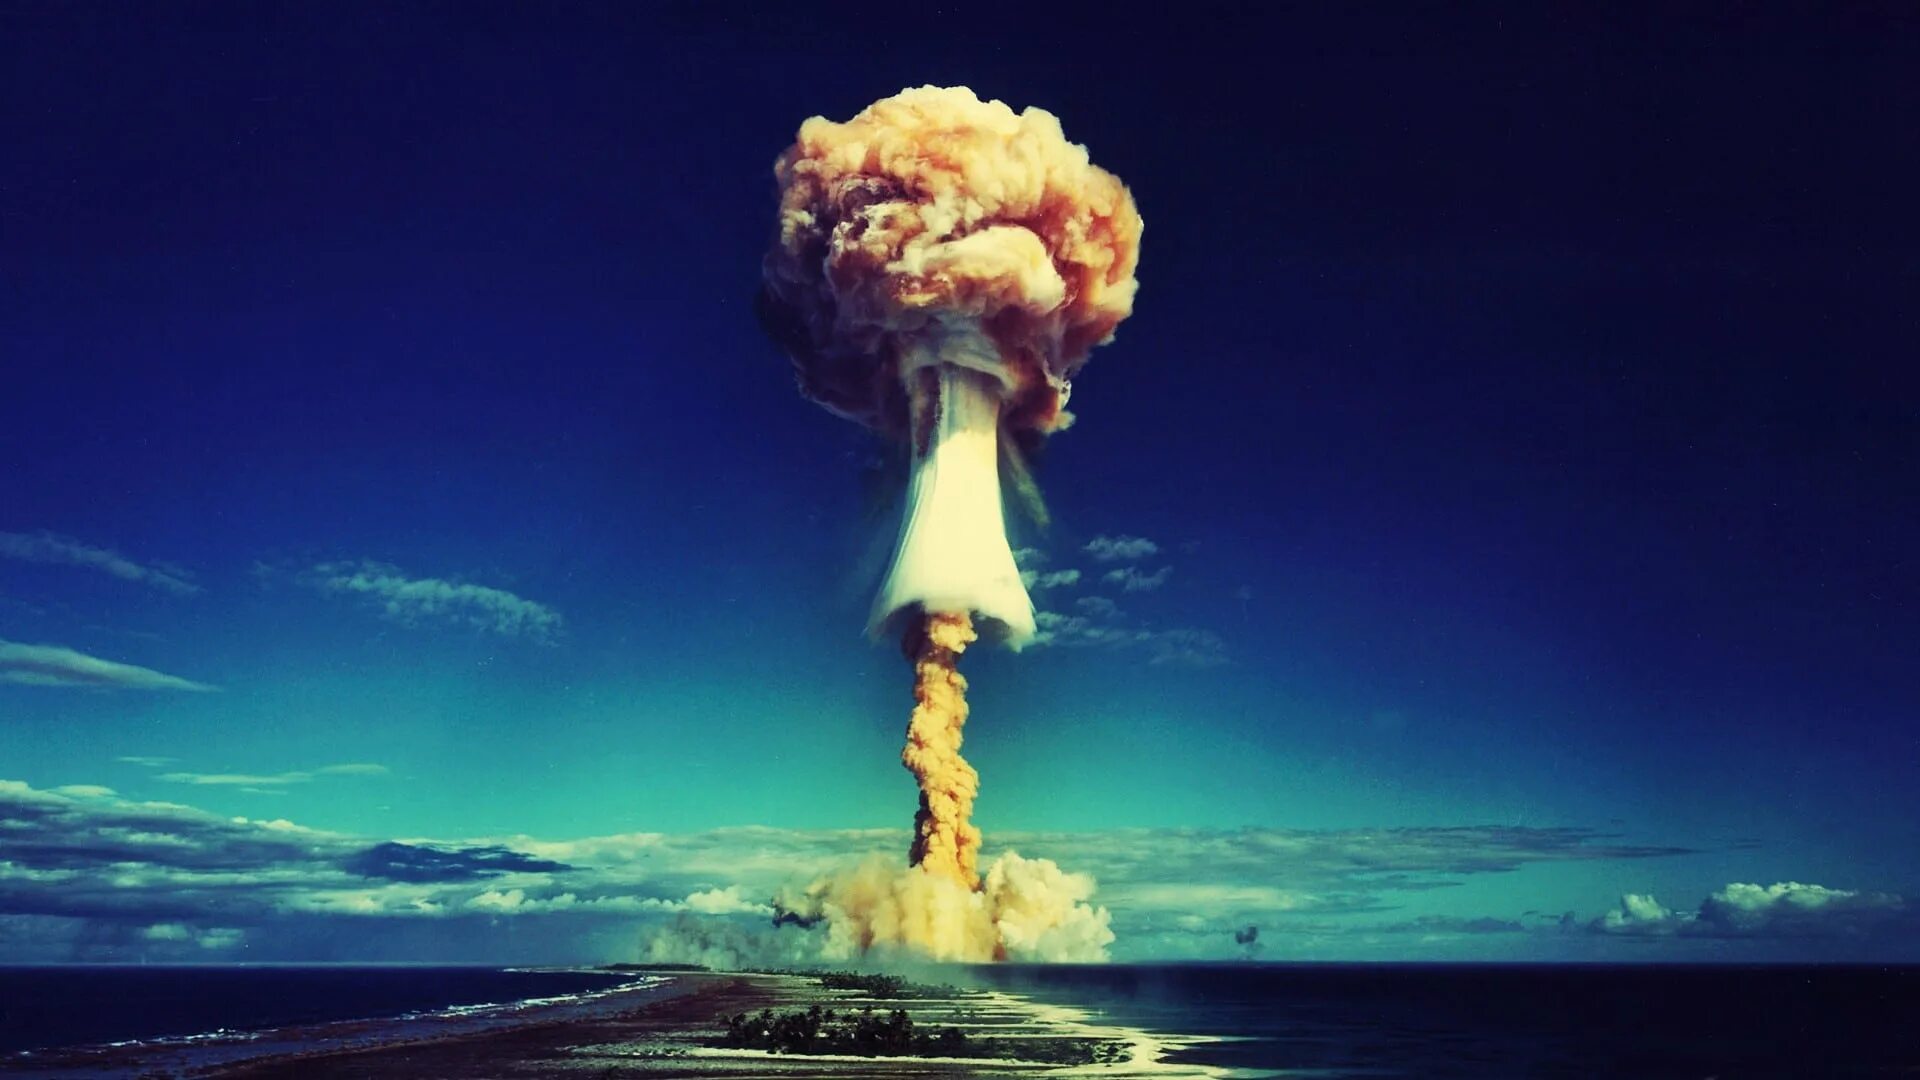 Сайт ядерного взрыва. Ядерный взрыв Атолл бикини. Атолл Муруроа ядерные испытания. Муруроа ядерный полигон.